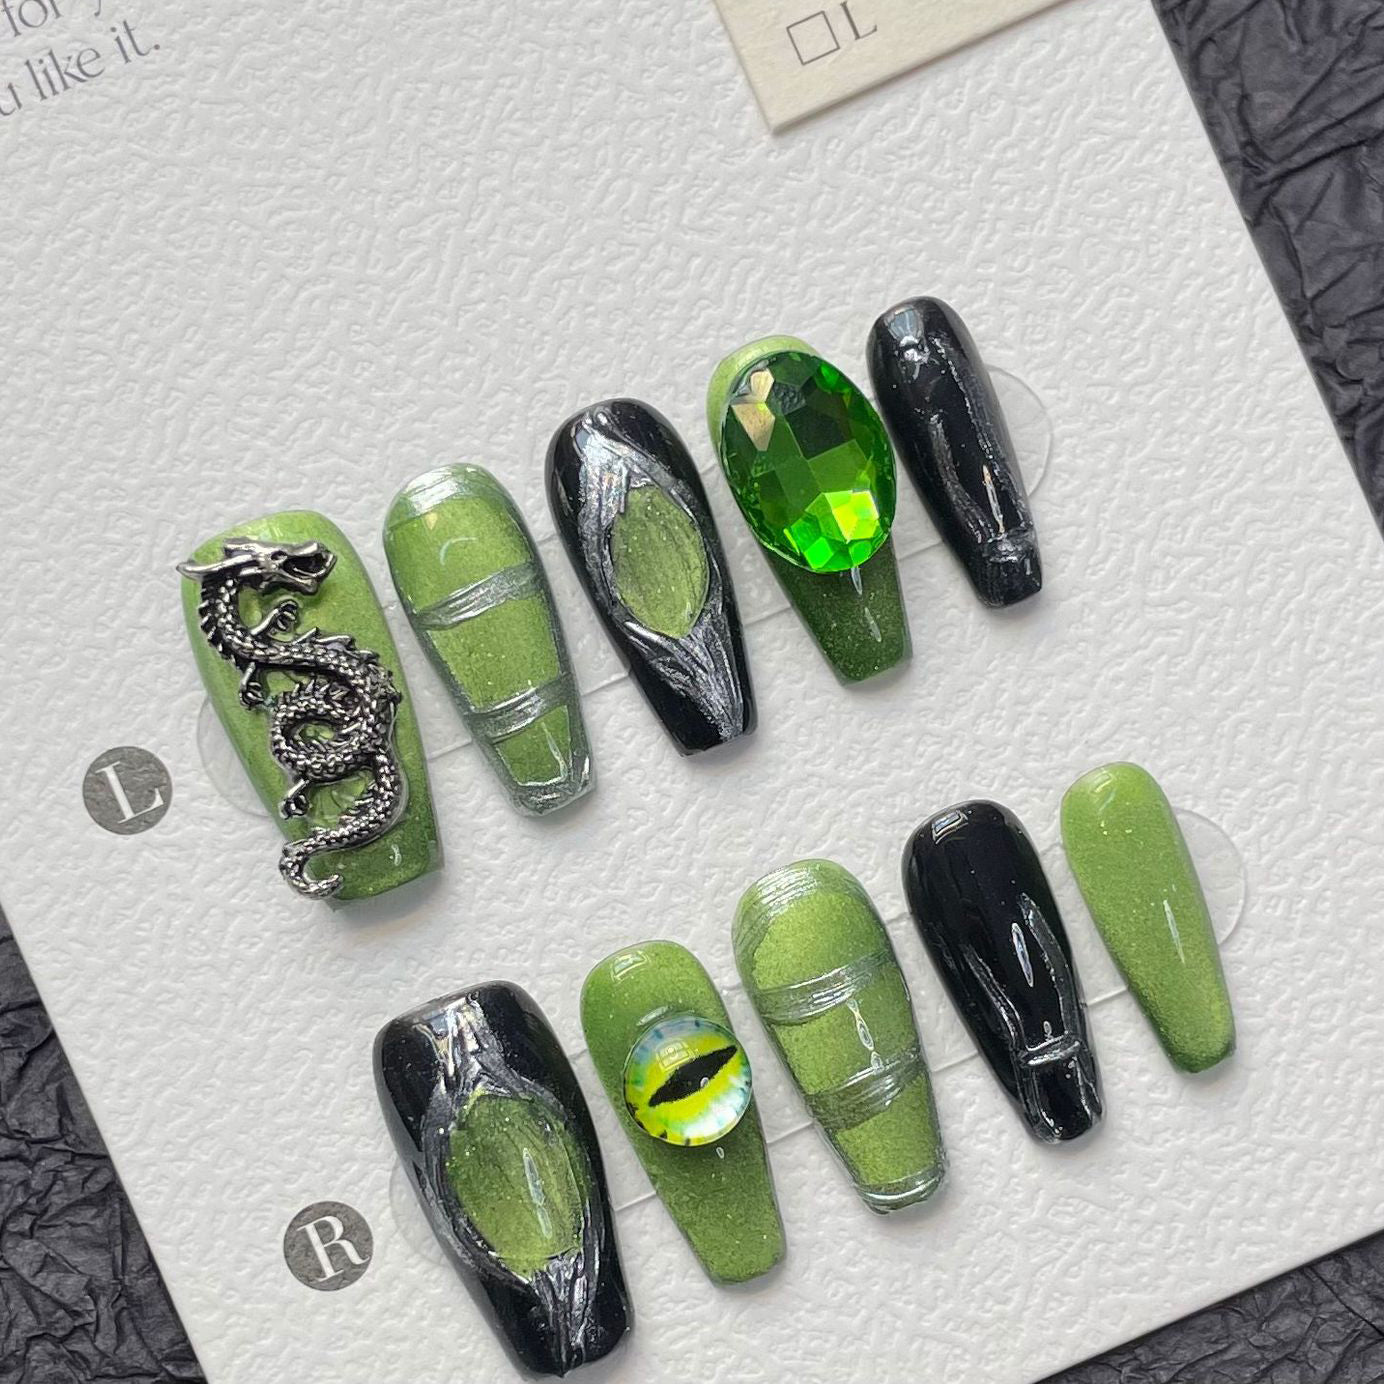 1291 Presse de style Green Cat’s Eye sur les ongles 100% faux ongles faits à la main vert